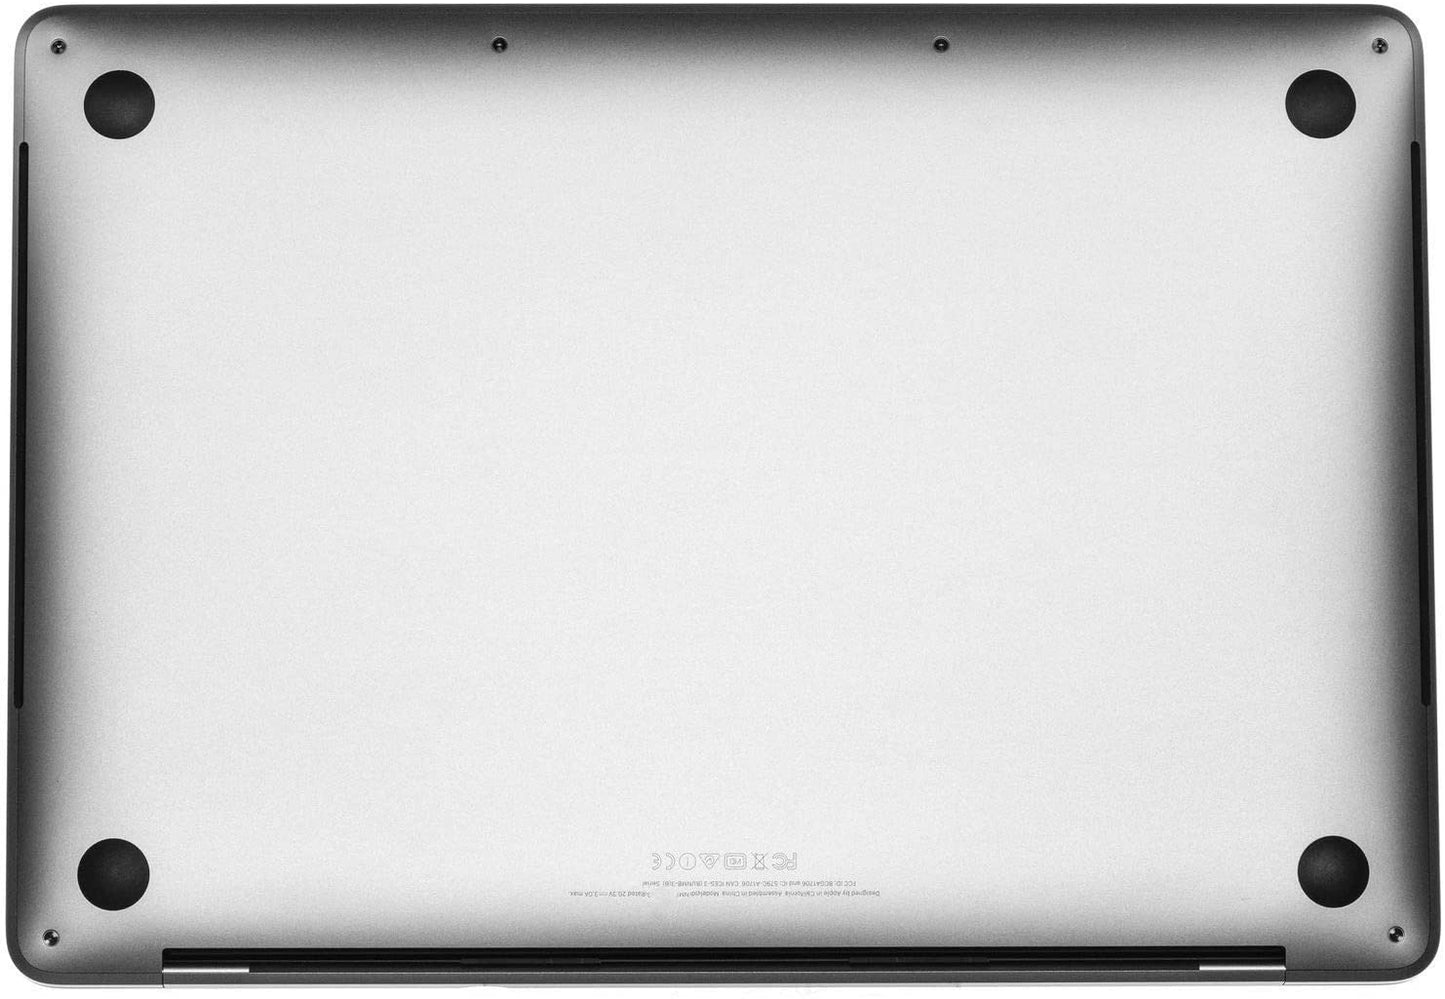 Apple MacBook Pro 2017| A1706 MPXV2LL/A |Core i5 |8GB RAM |256GB SSD